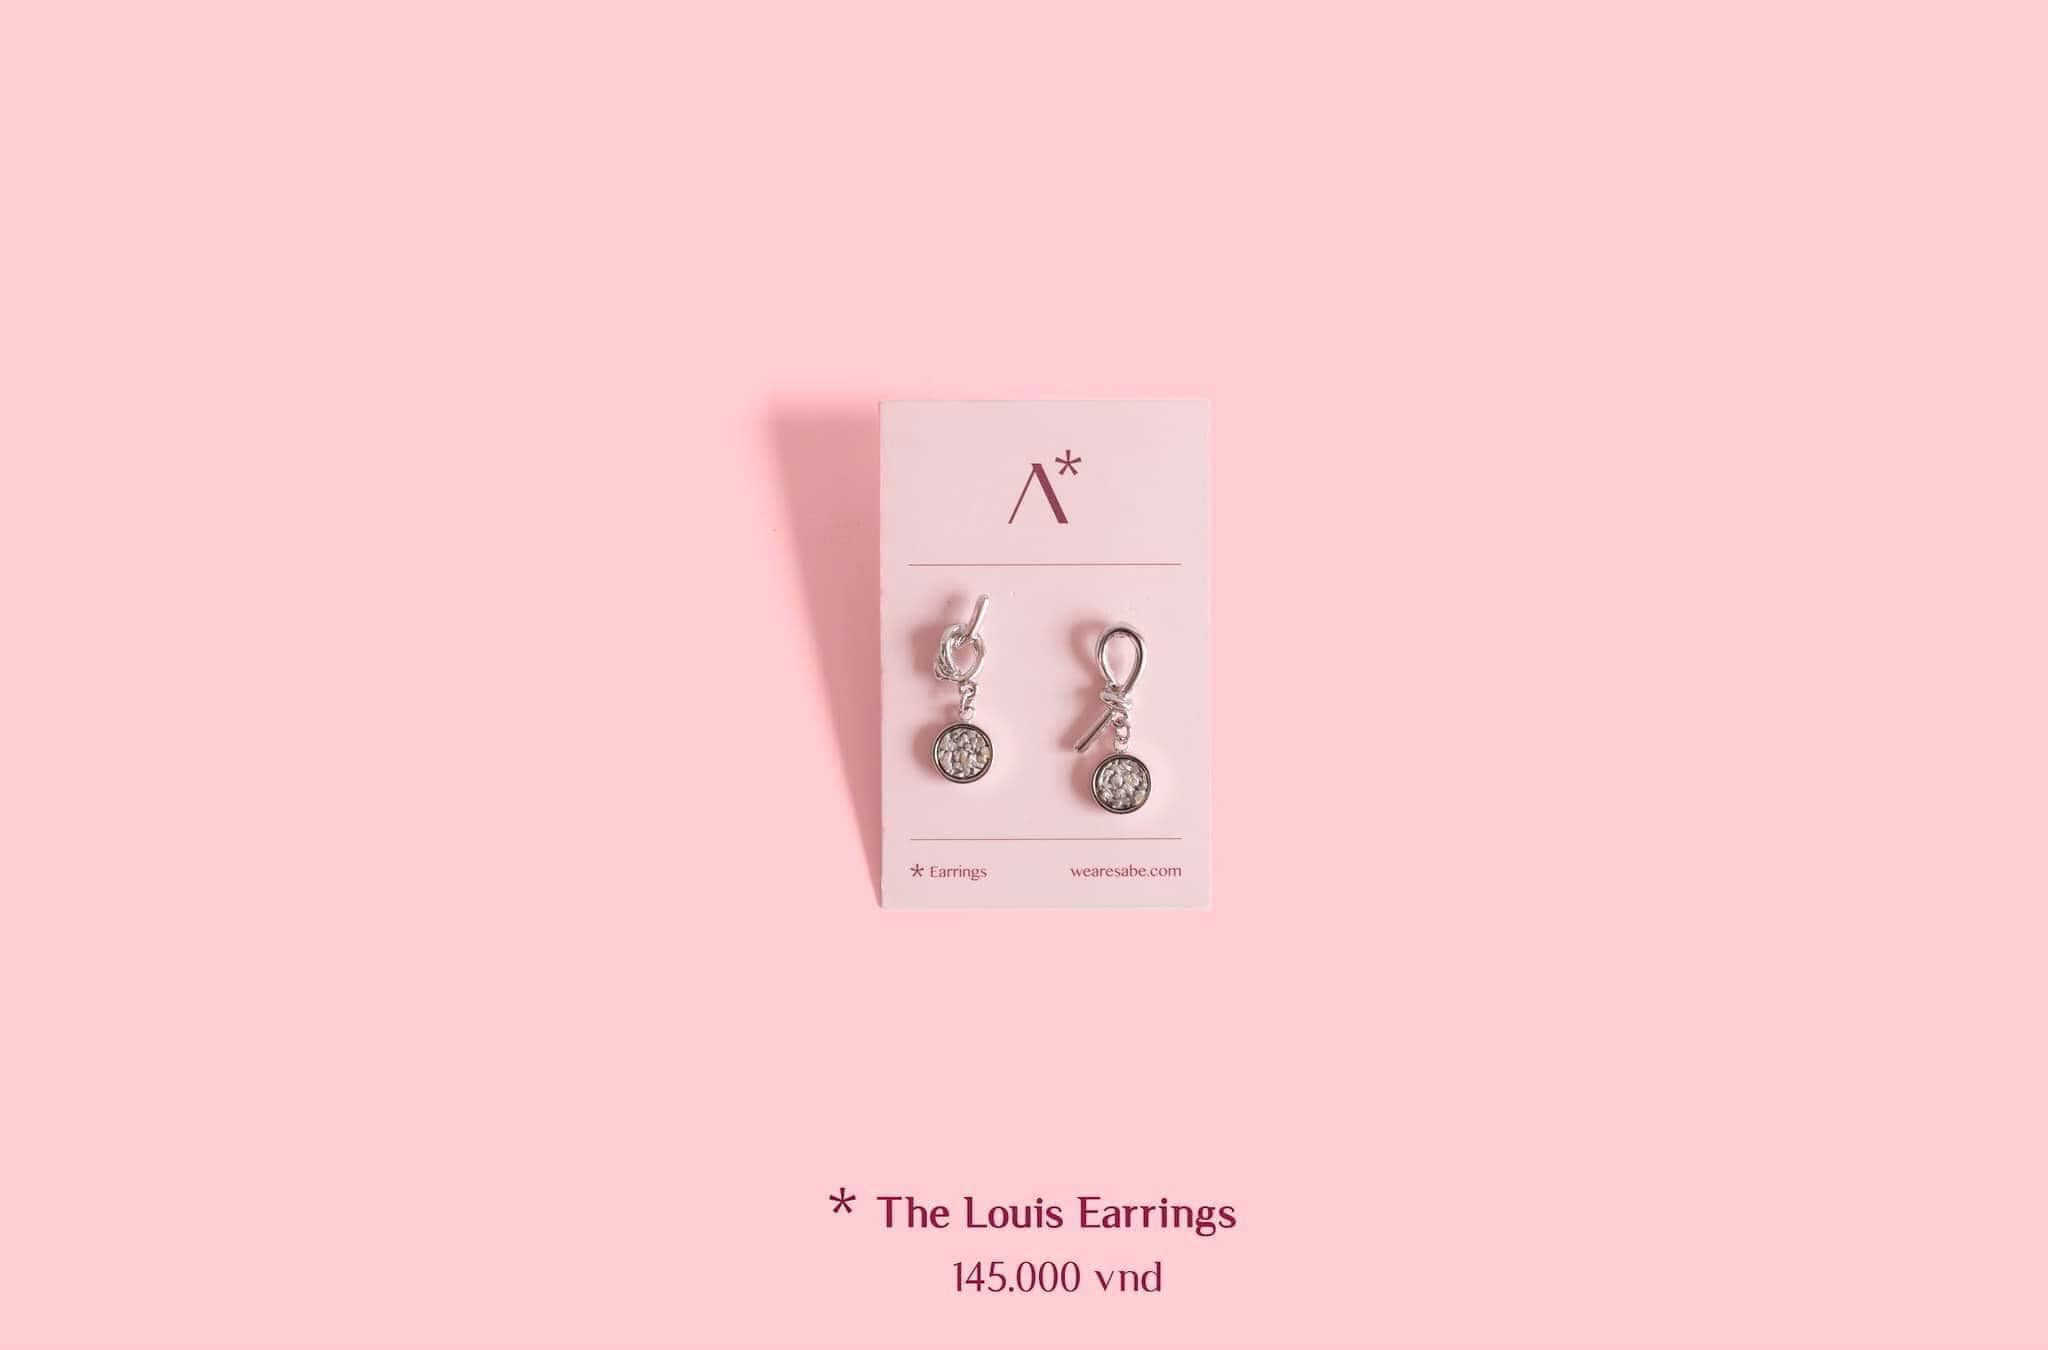 The Louis Earrings